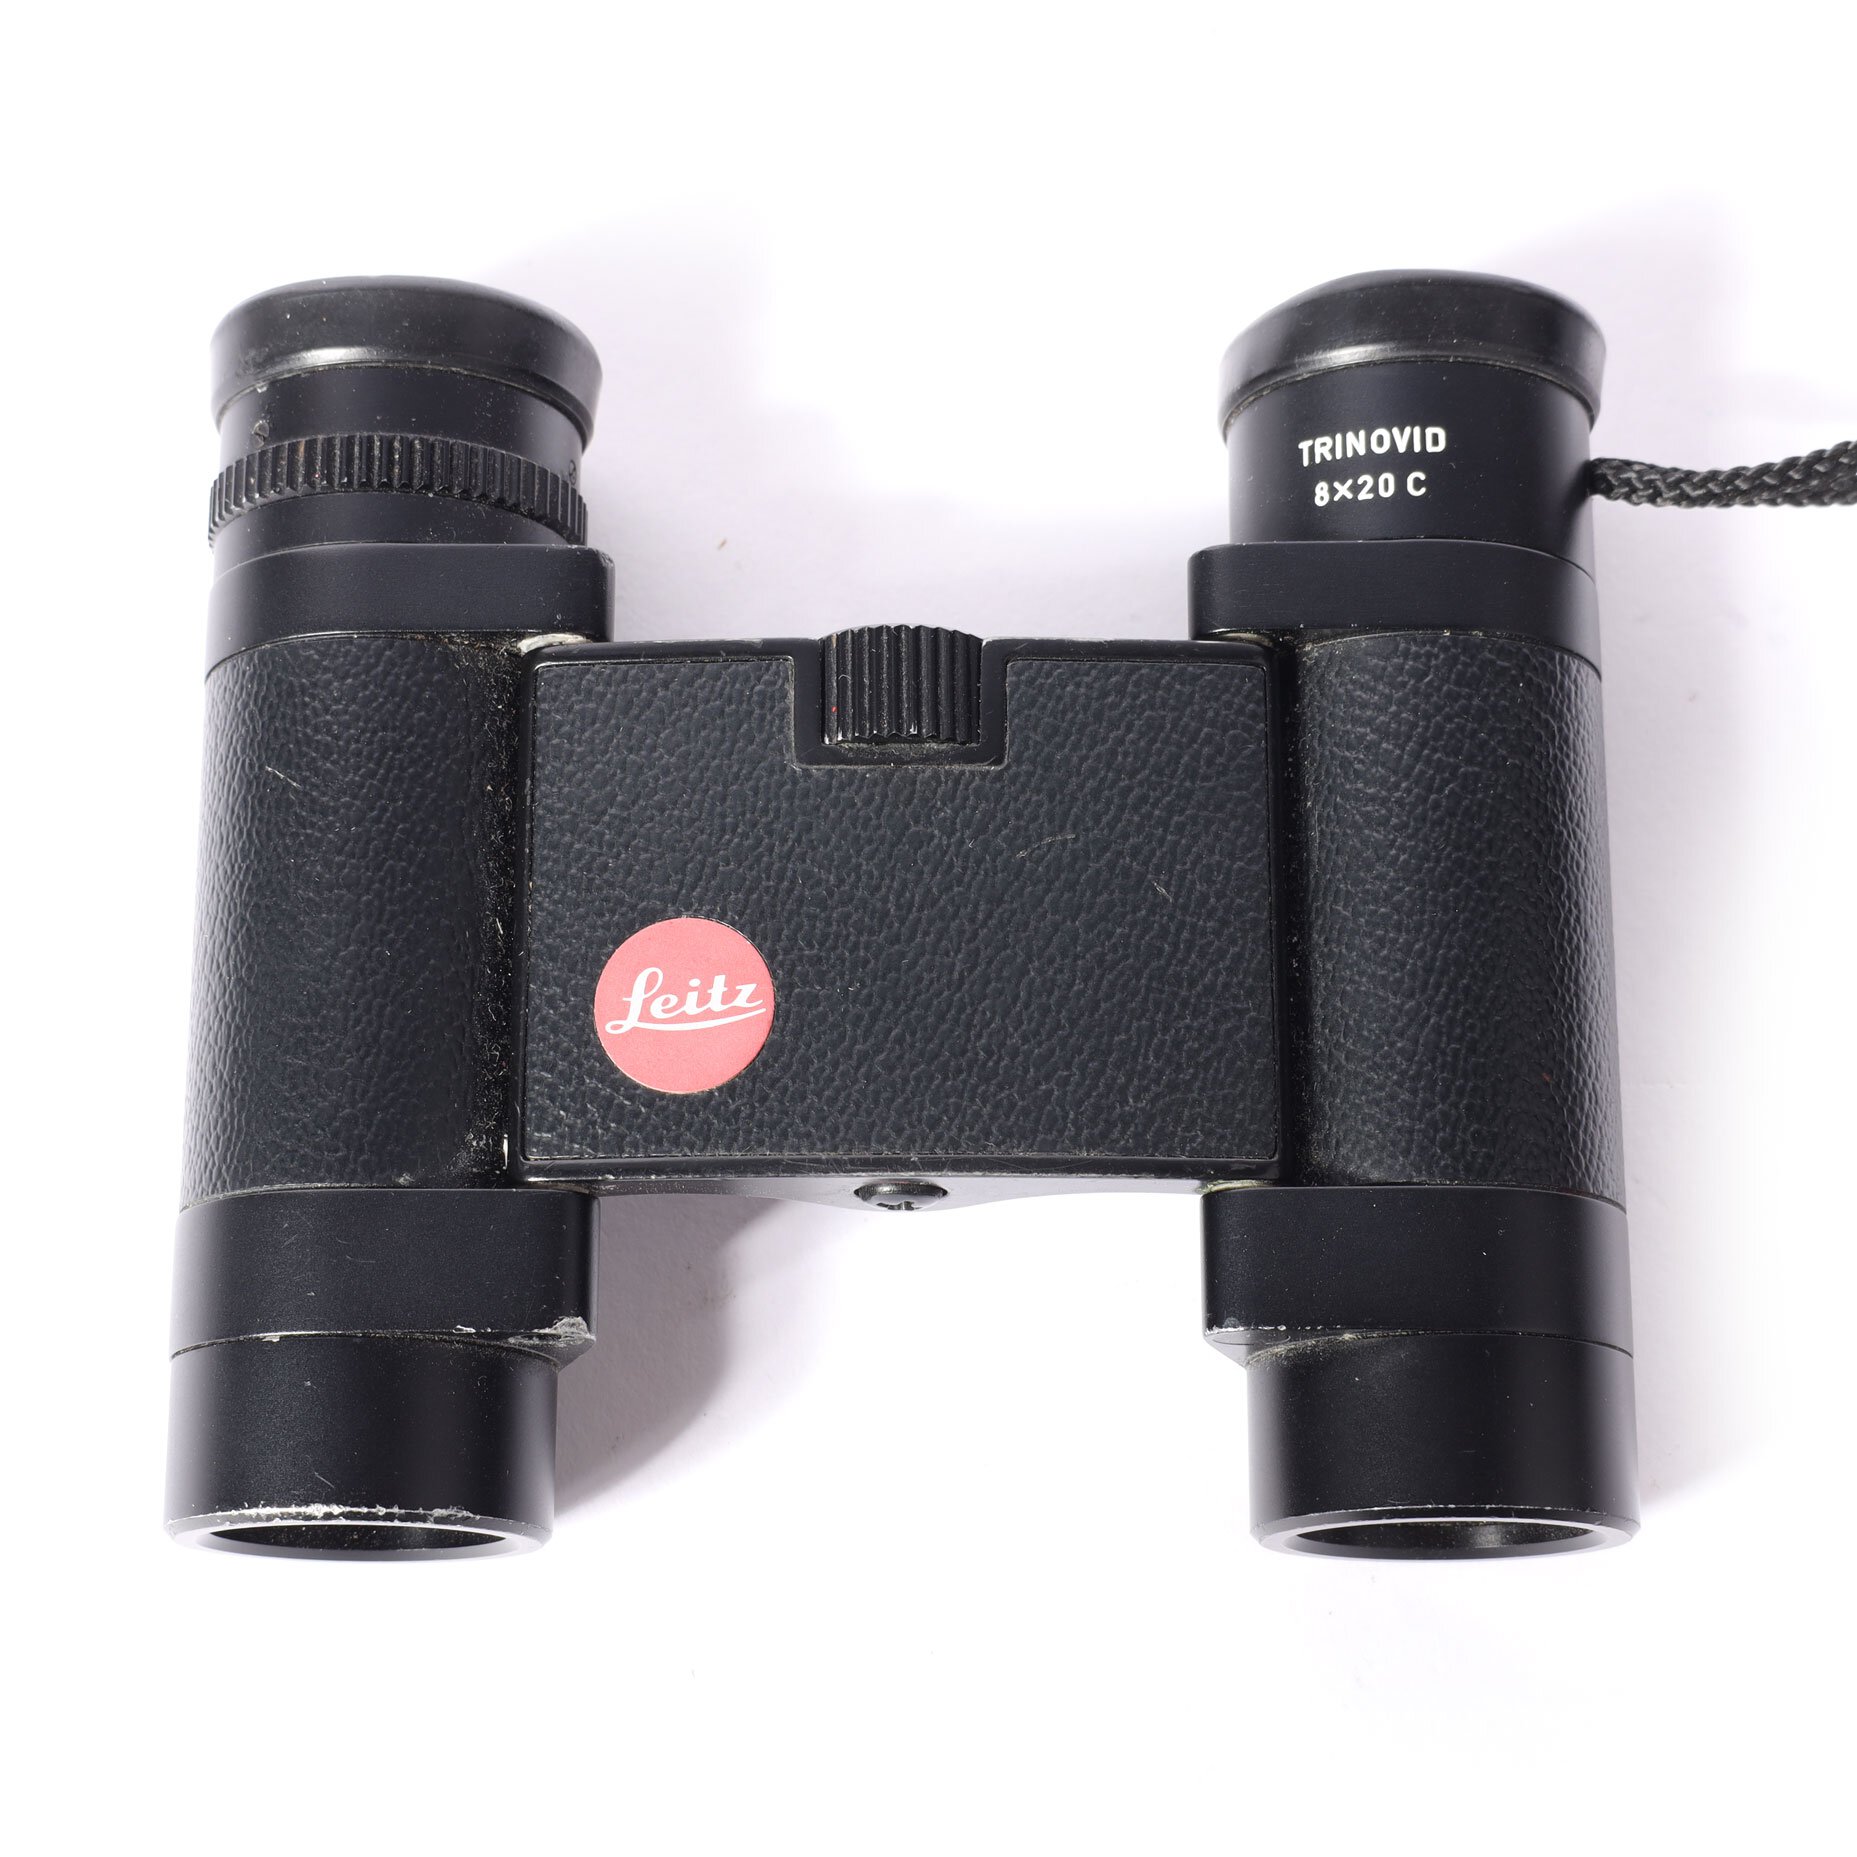 Leitz Leica Trinovid 8x20C